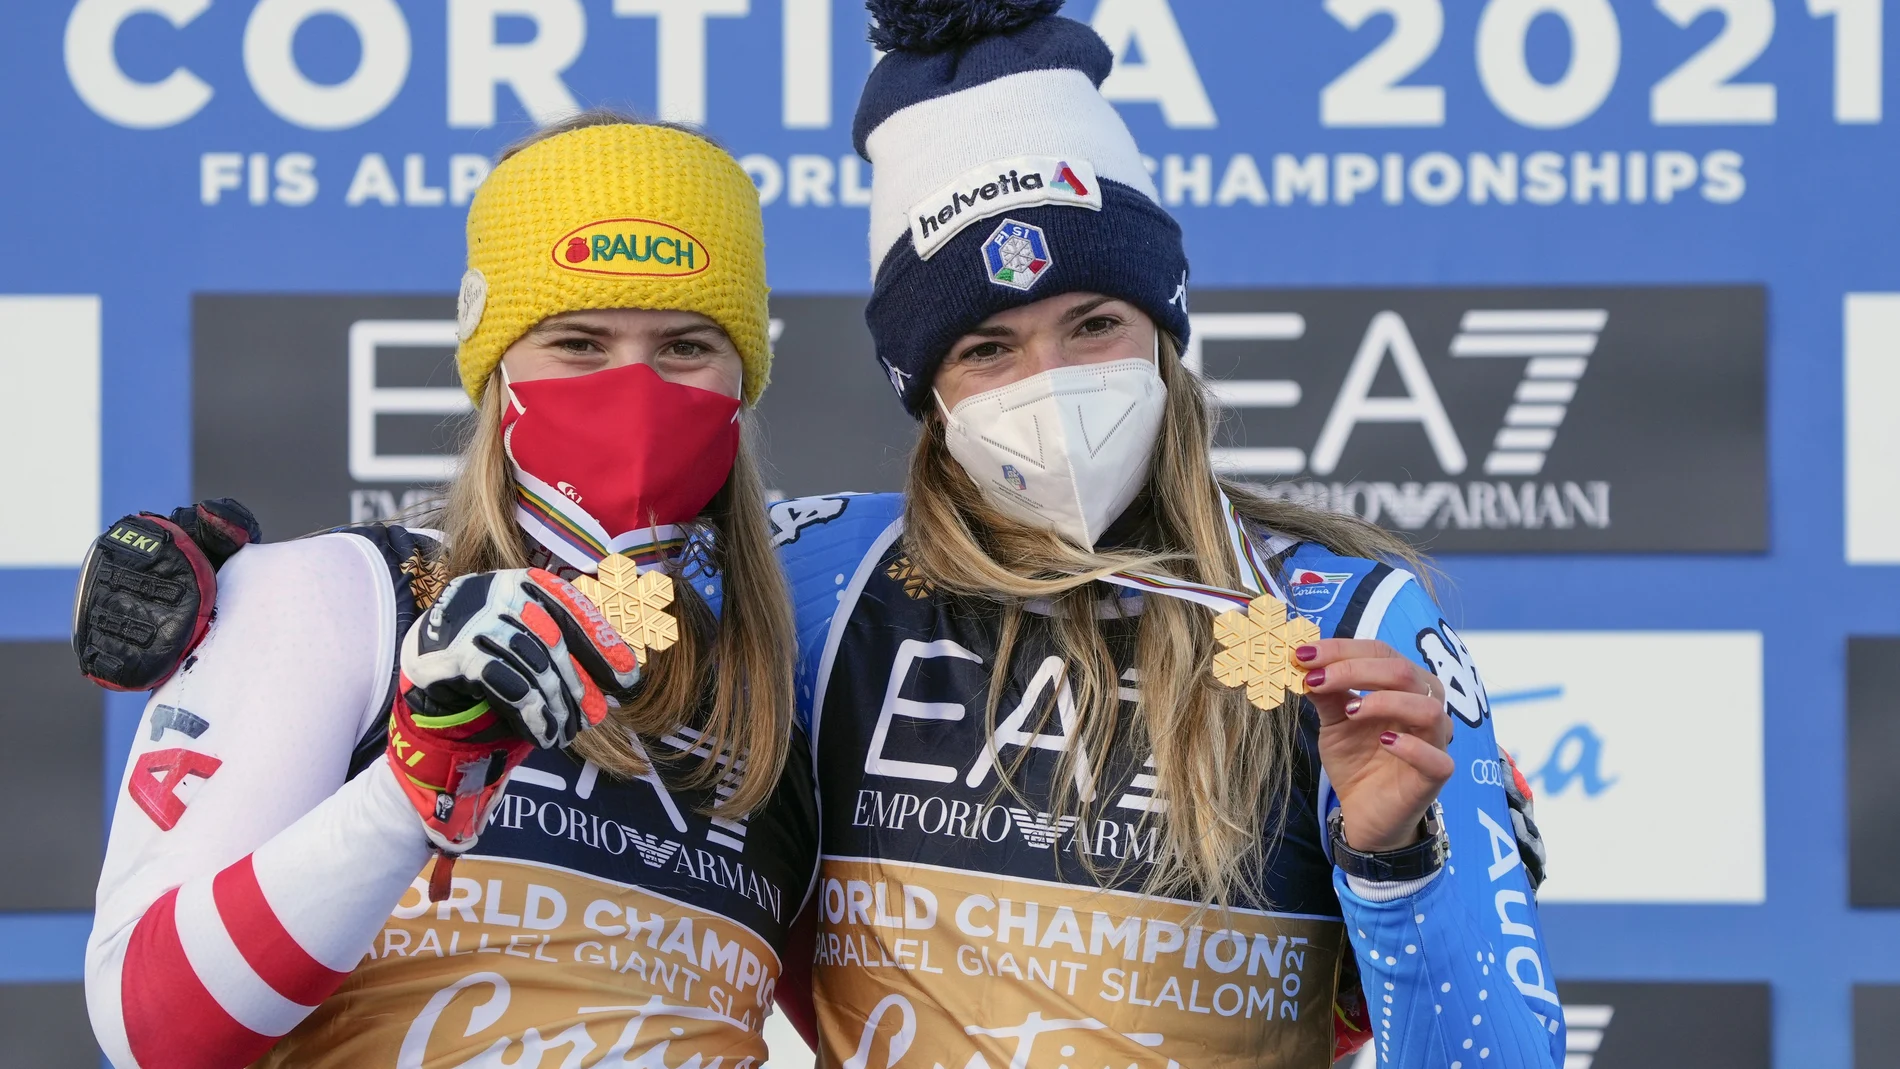 La italiana Marta Bassino, a la derecha, y la austriaca Katharina Liensberger muestran sus medallas de oro después del eslalon gigante paralelo, en los Campeonatos del Mundo de esquí alpino en Cortina d'Ampezzo, Italia, el martes 16 de febrero de 2021. La final femenina de dos carreras entre Marta Bassino y Katharina Liensberger terminó en un empate, y los organizadores declararon inicialmente a la italiana como ganadora y luego la plata de Katharina Liensberger se convirtió en un segundo oro. (AP Photo/Giovanni Auletta)